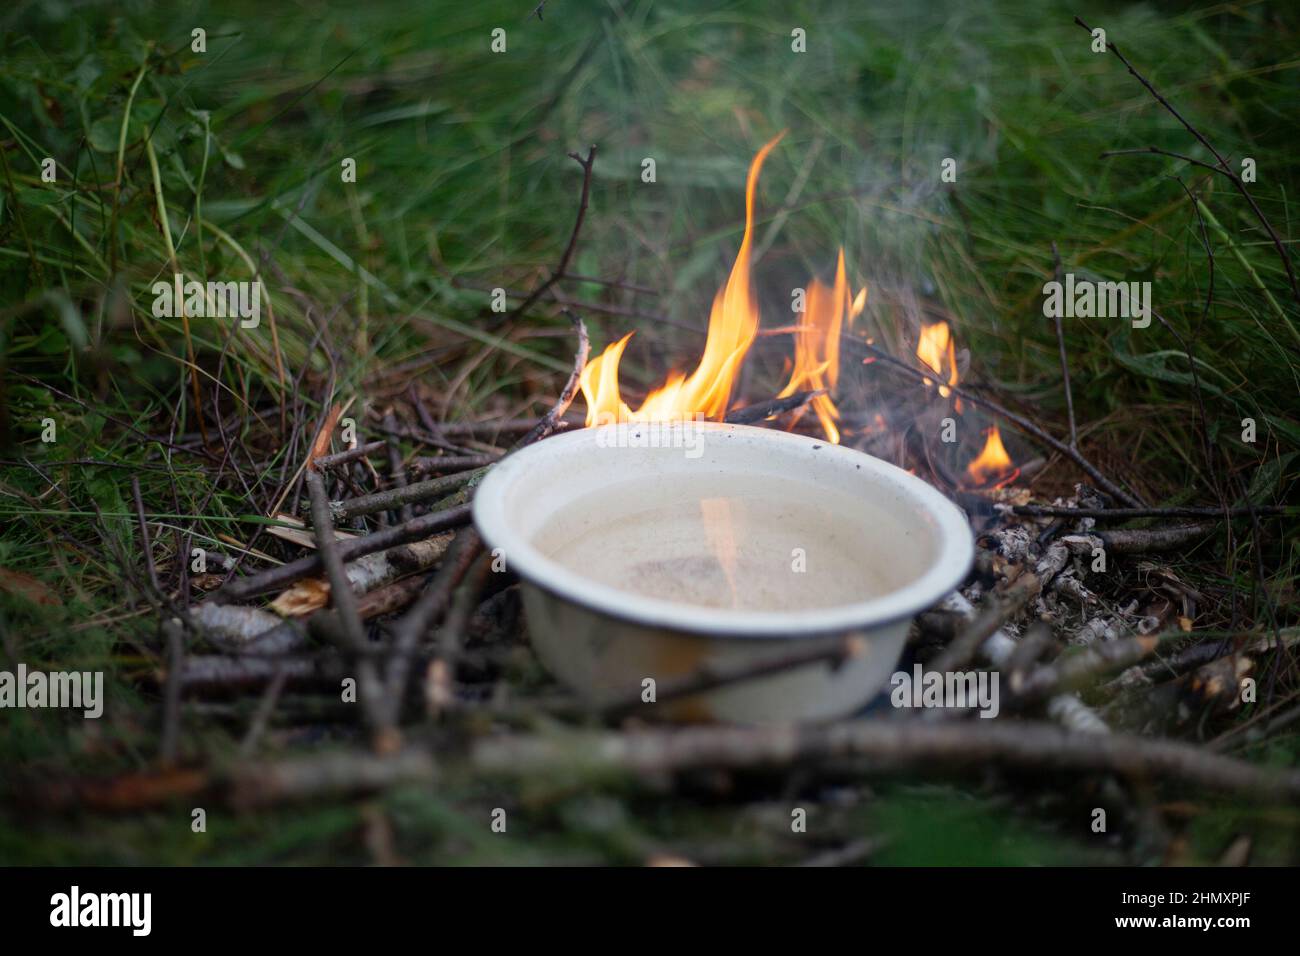 Incendio turístico. Calefacción de agua al fuego. Platos con líquido sobre llama abierta. Cocinar en madera. Agua hirviendo del río en el bosque. Foto de stock